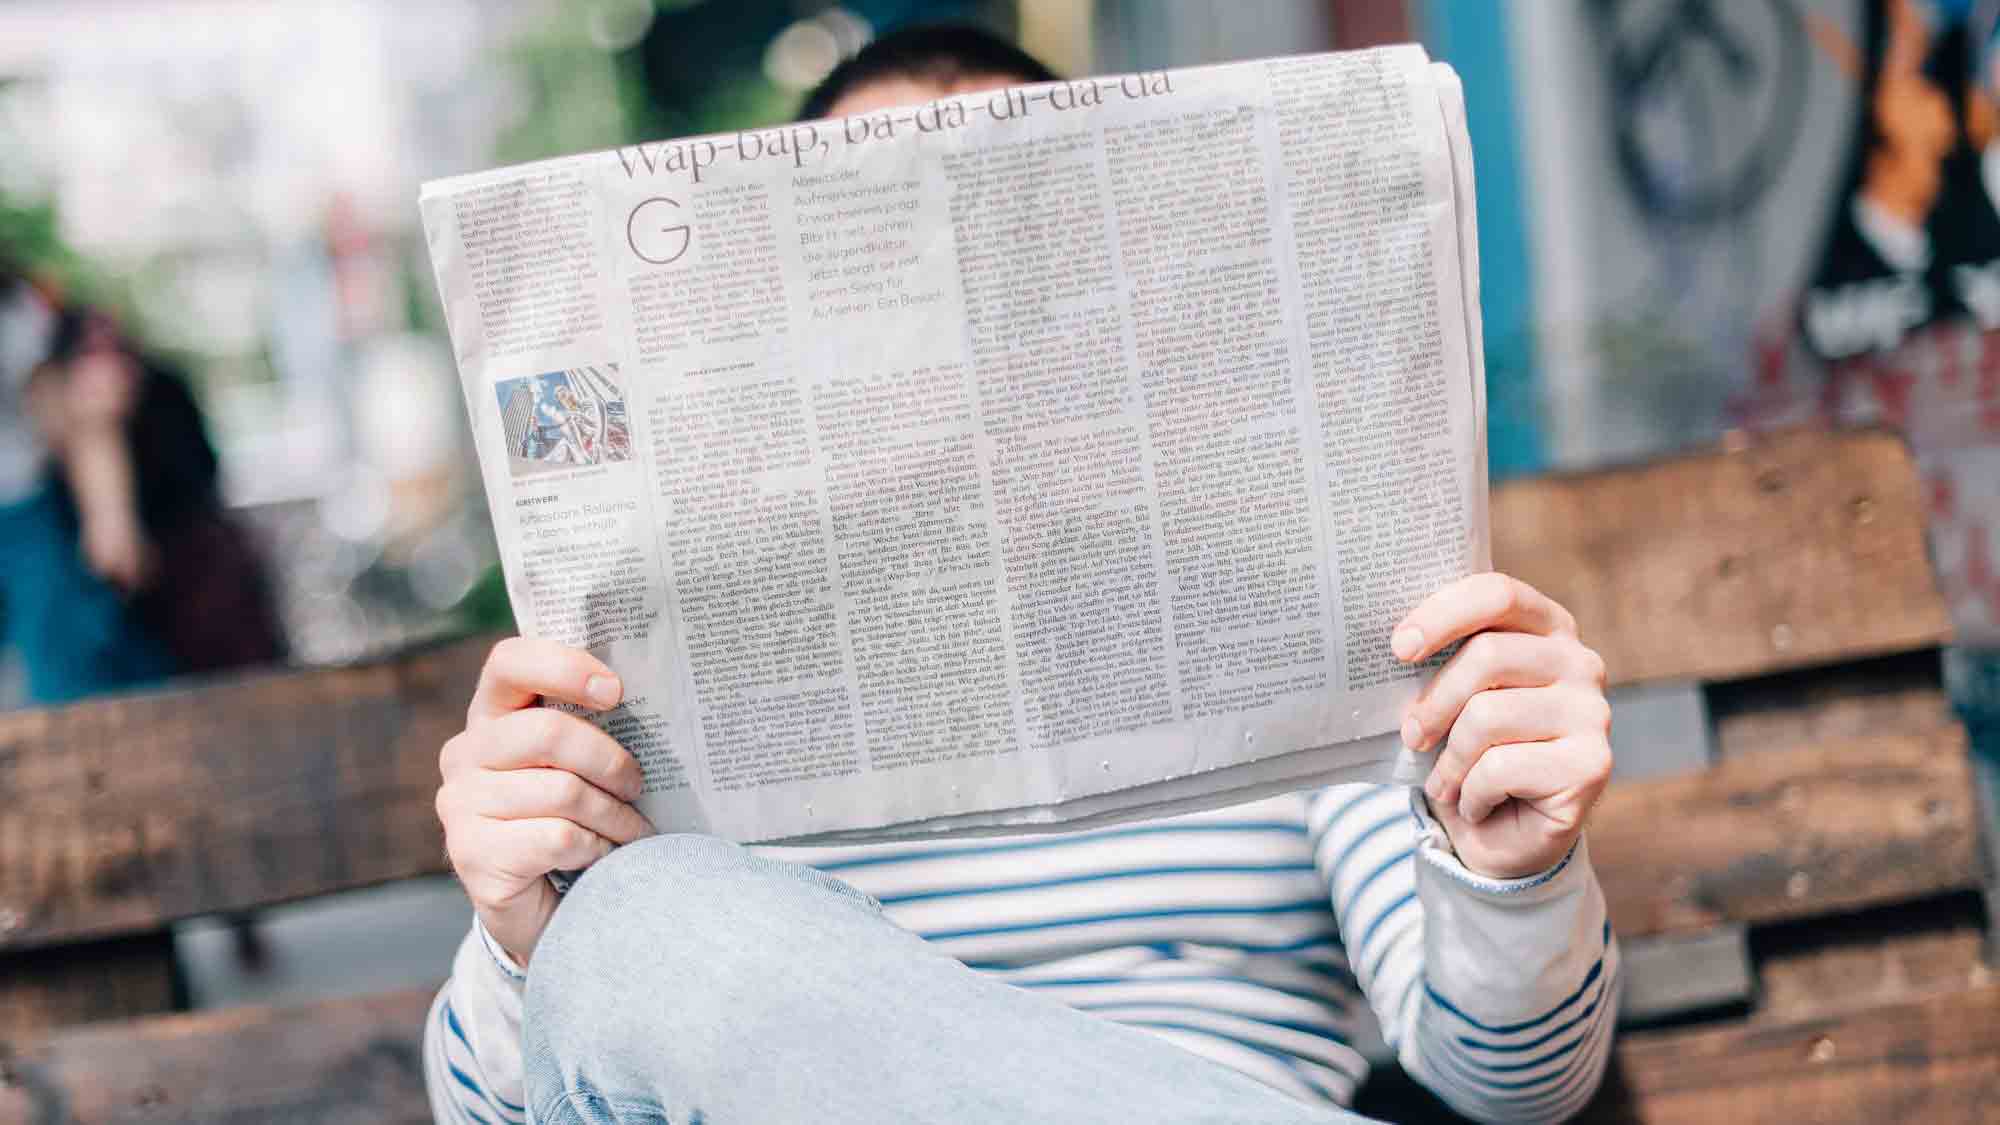 Die handwerklichen Fehler in der Aiwanger Berichterstattung der Süddeutschen Zeitung sind eklatant